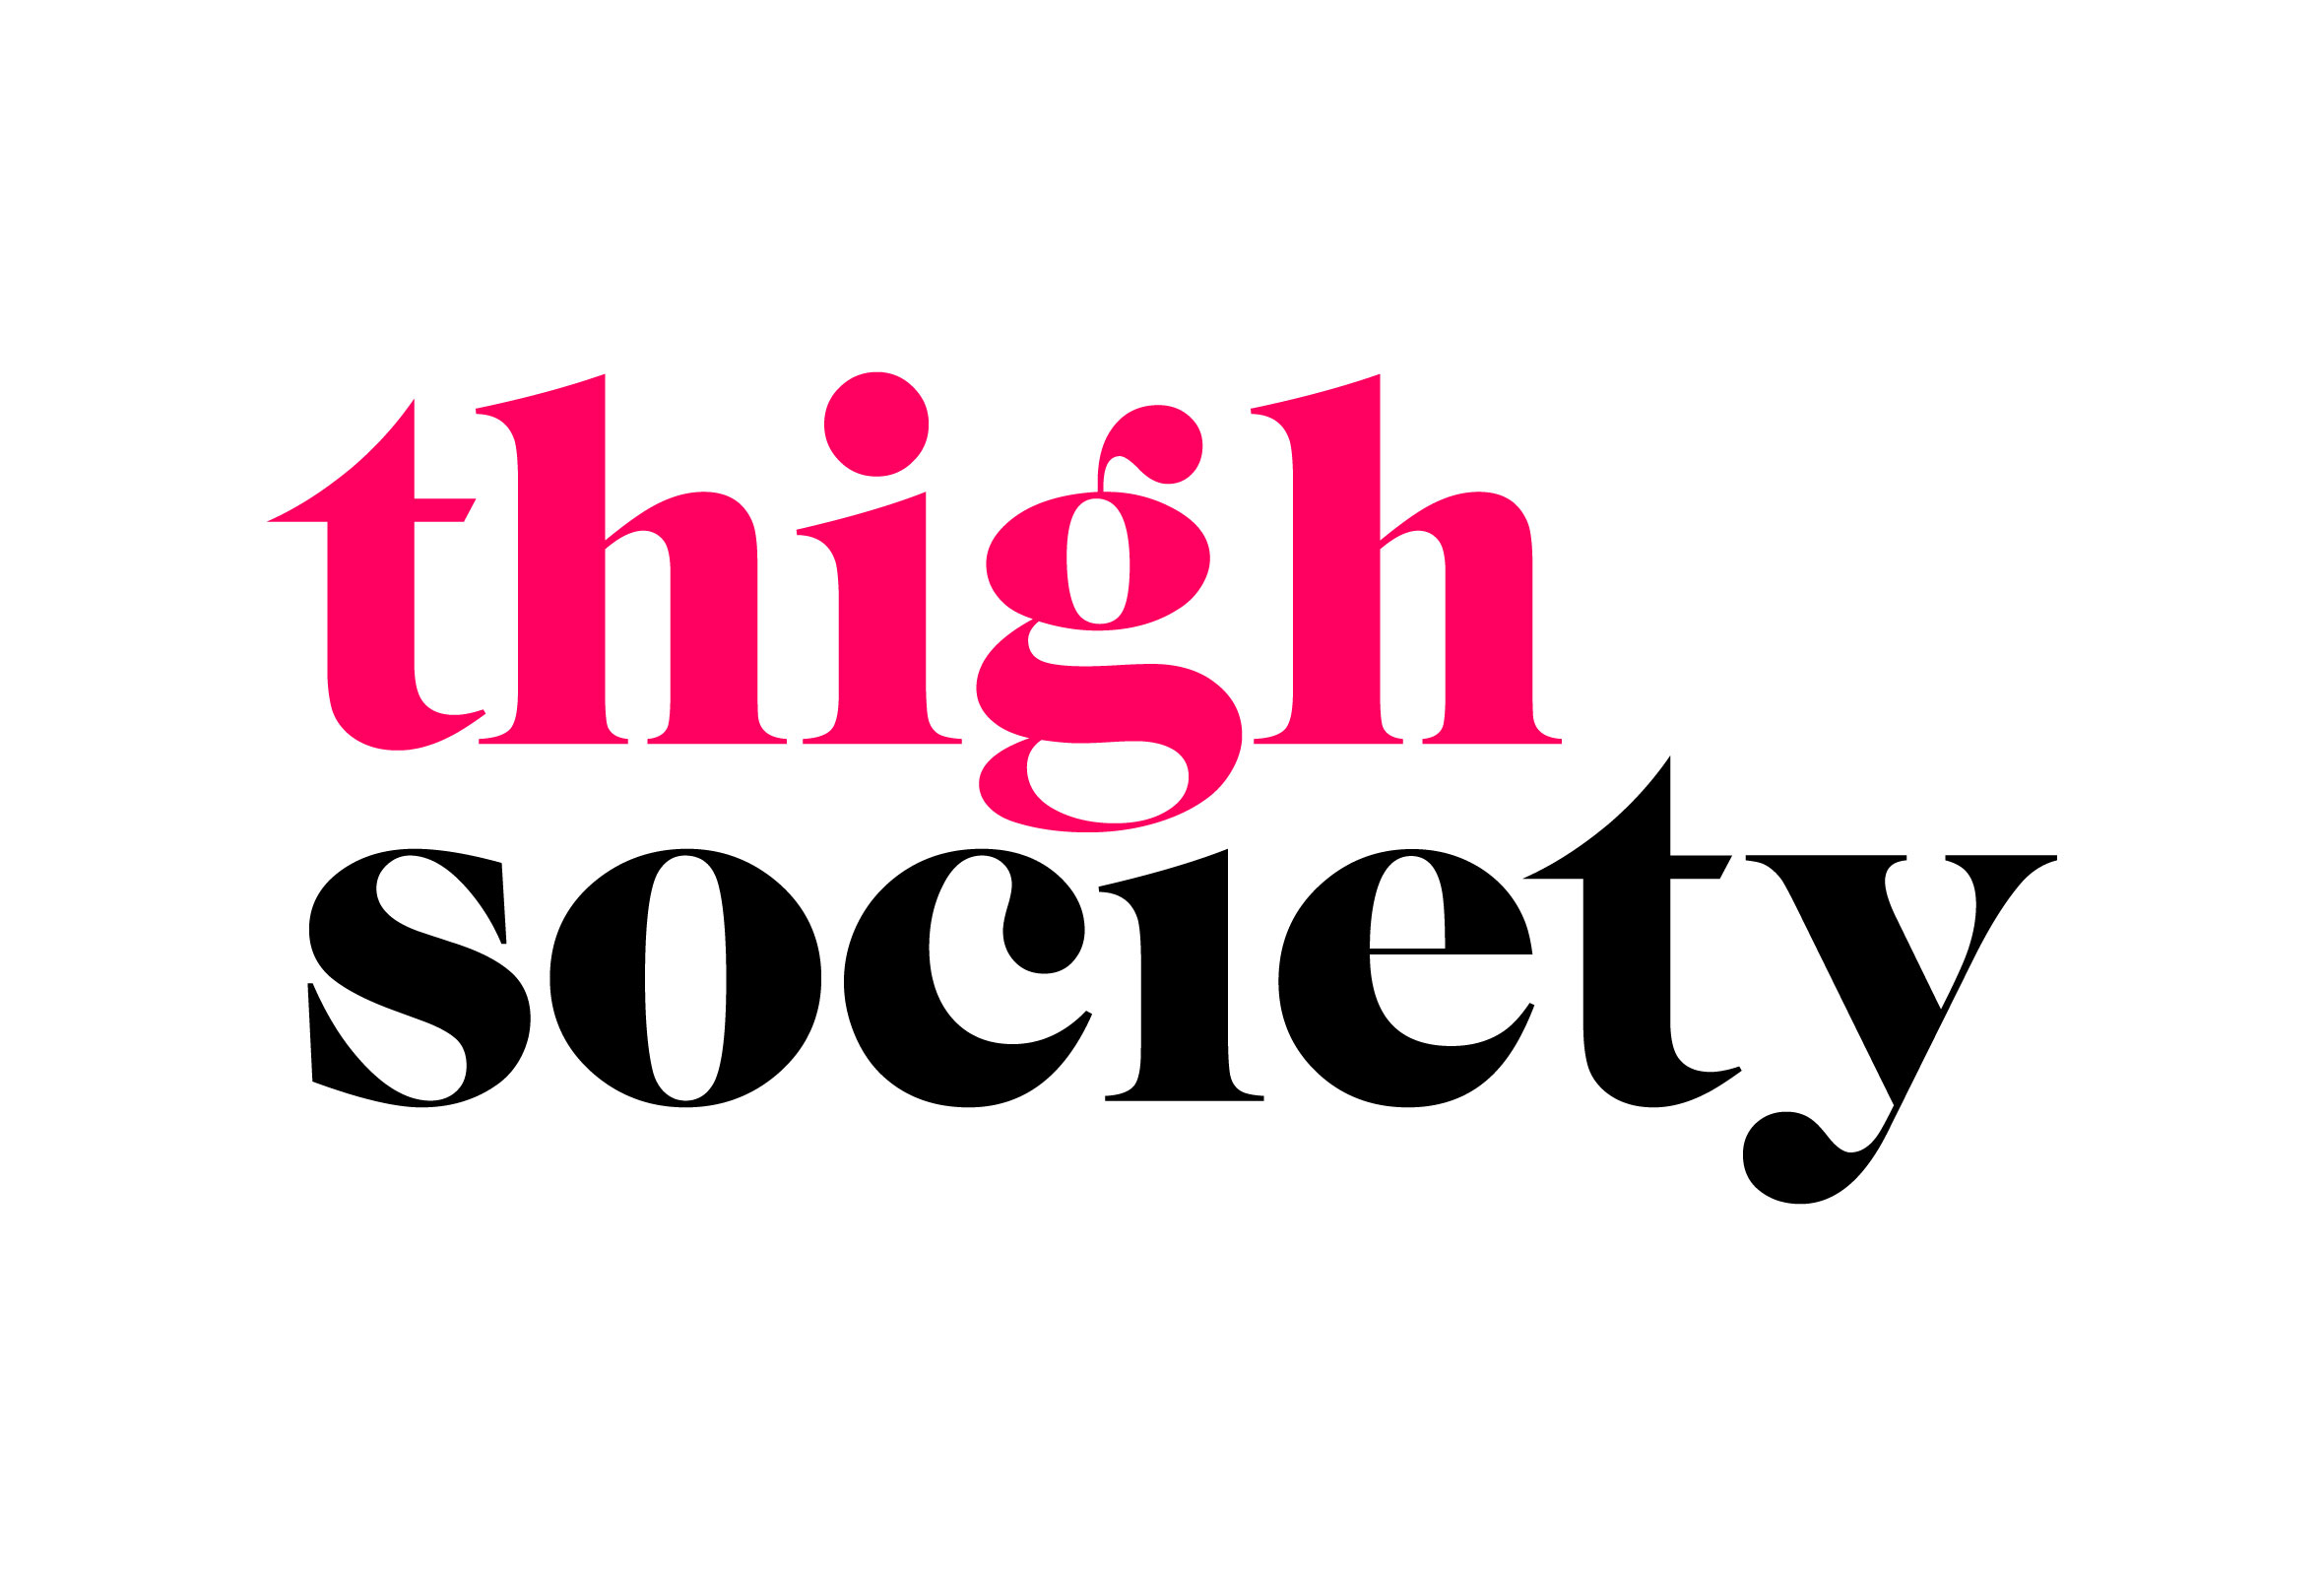 Thigh Society | Brand Identity